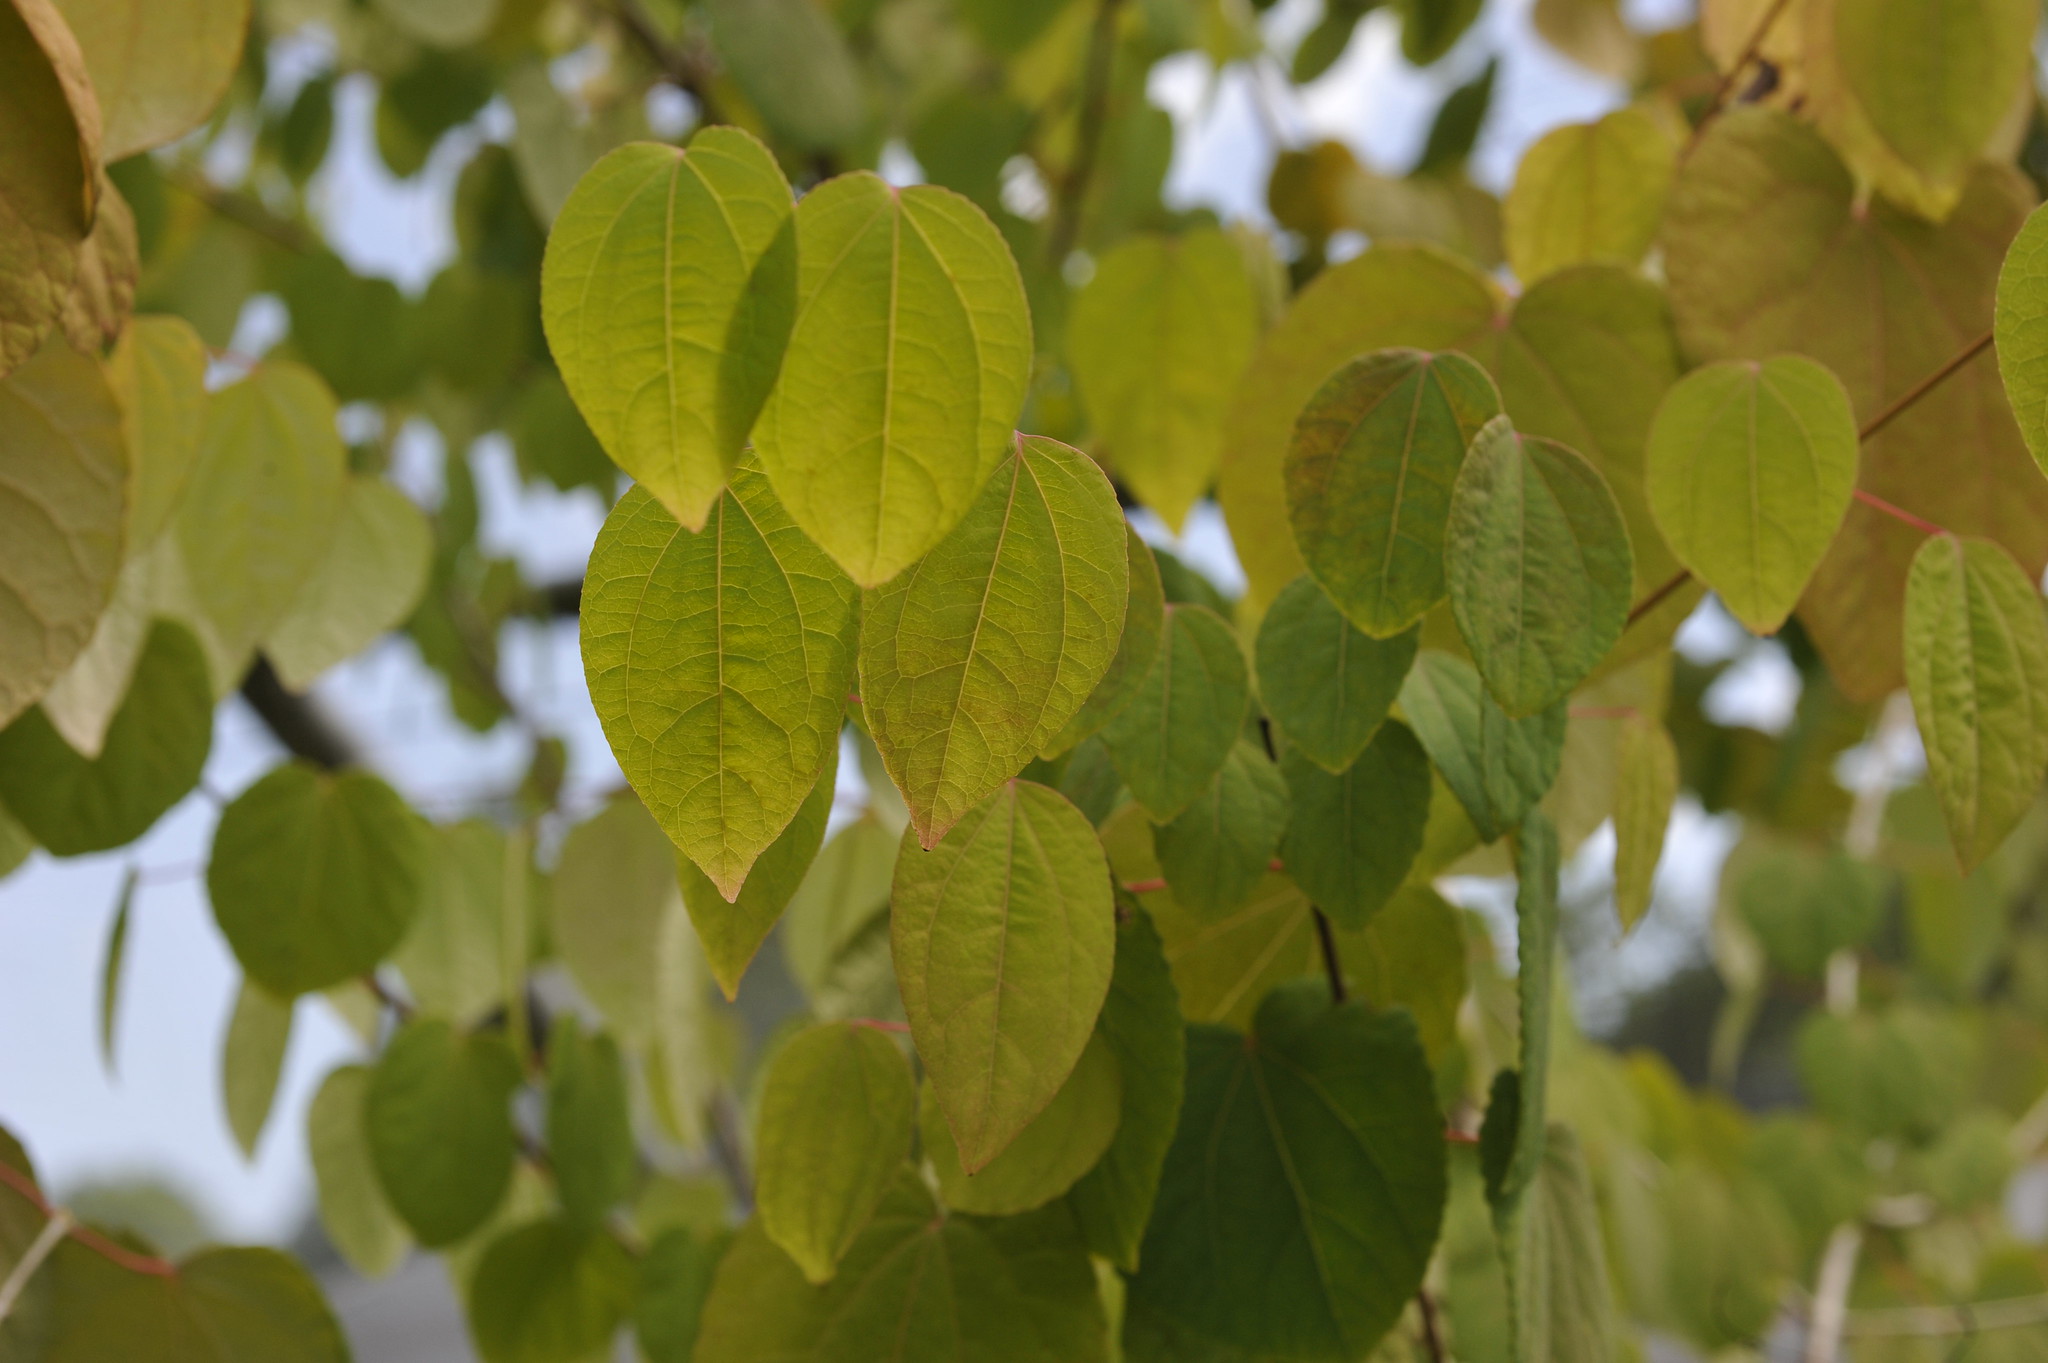 Katsura leaves